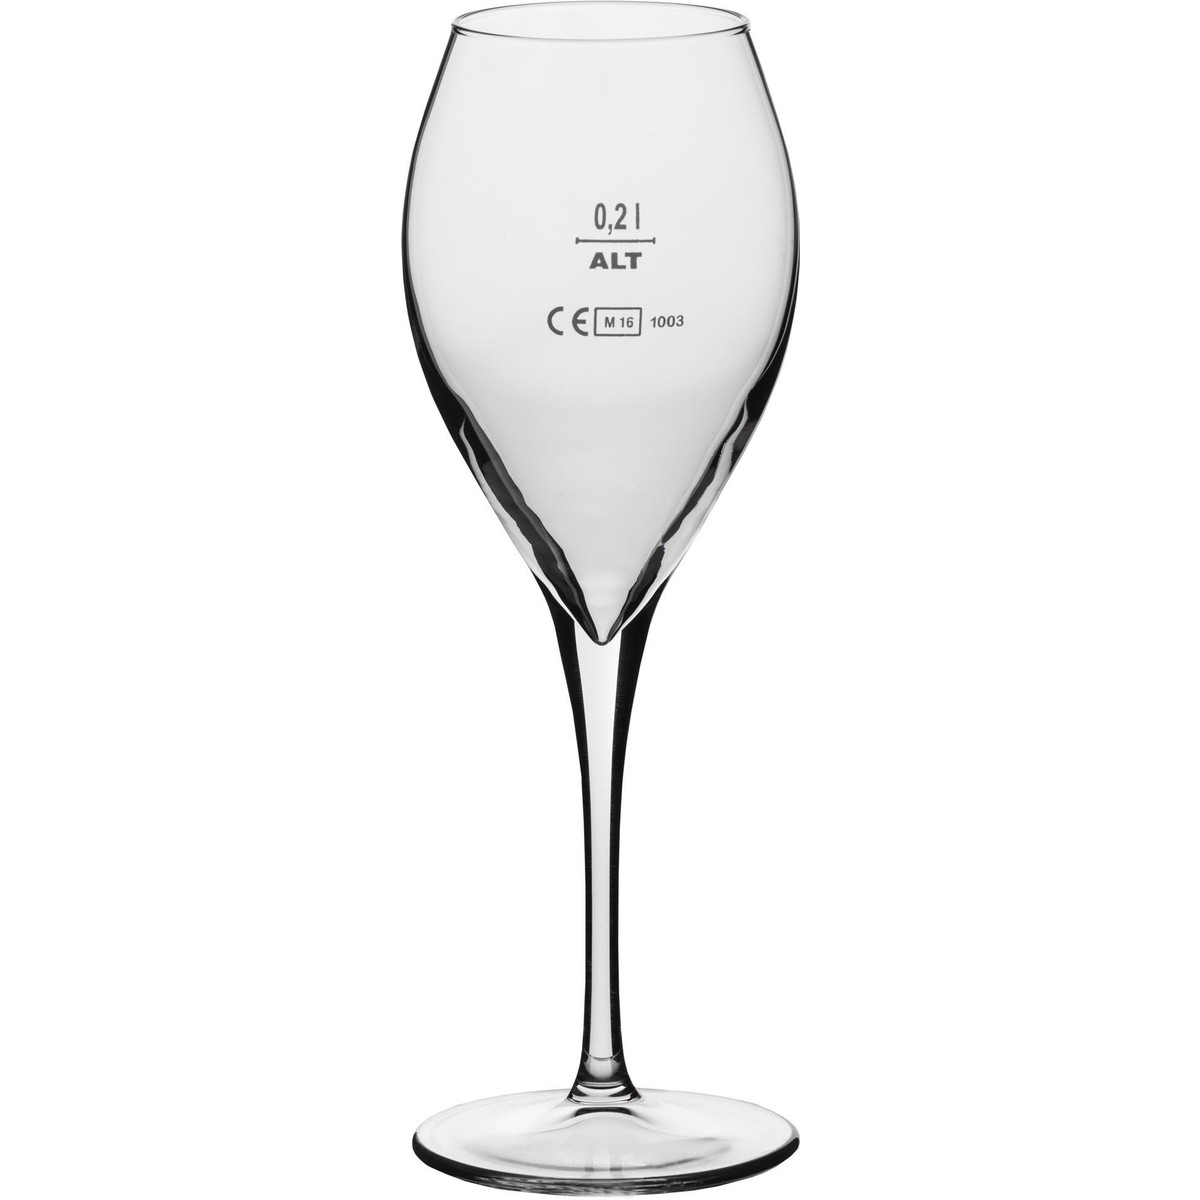 Glasserie "Calice" Weißweinglas 325ml mit Füllstrich